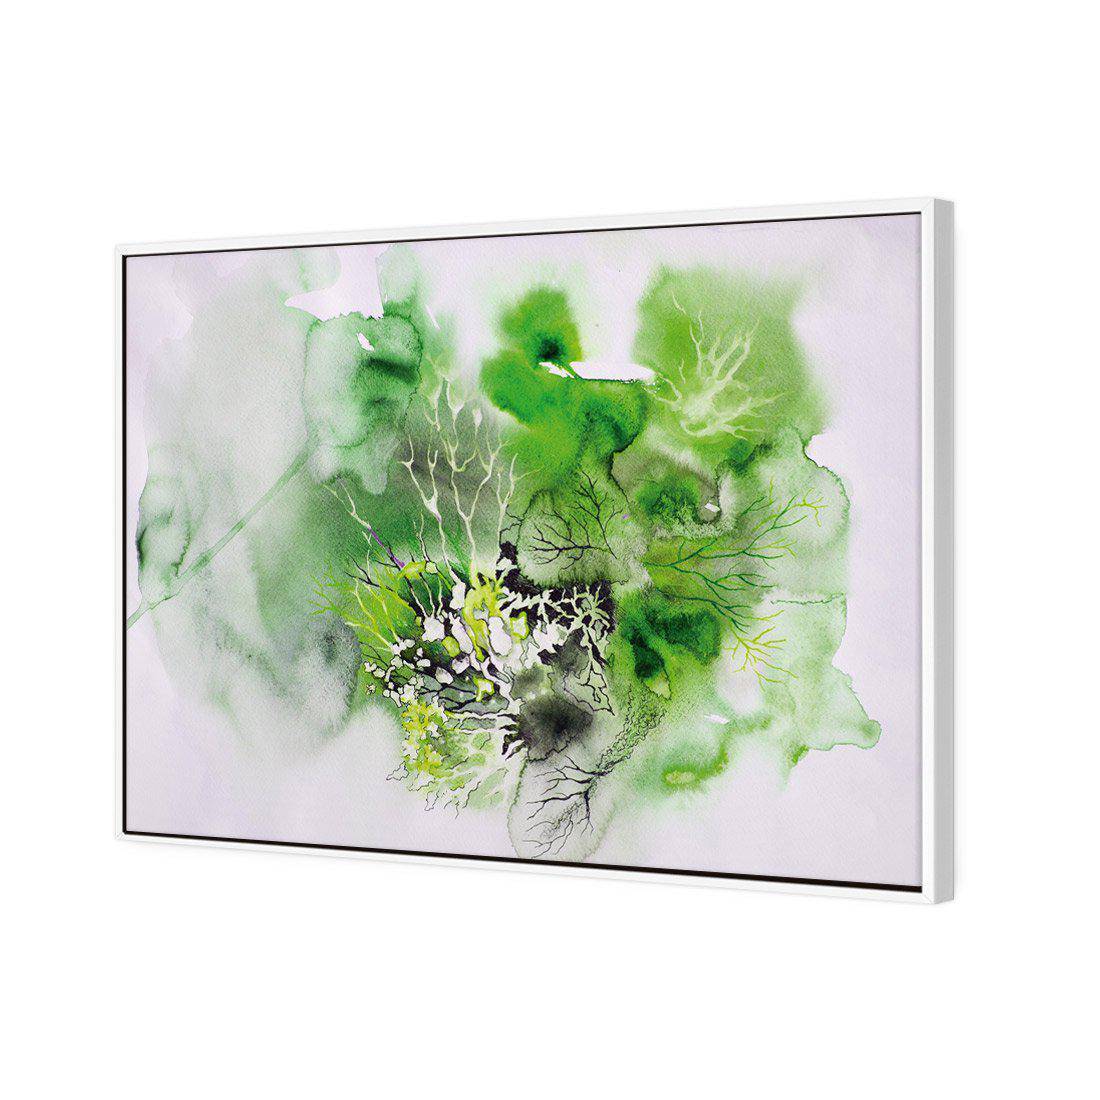 Veins Of Life Green Canvas Art-Canvas-Wall Art Designs-45x30cm-Canvas - White Frame-Wall Art Designs